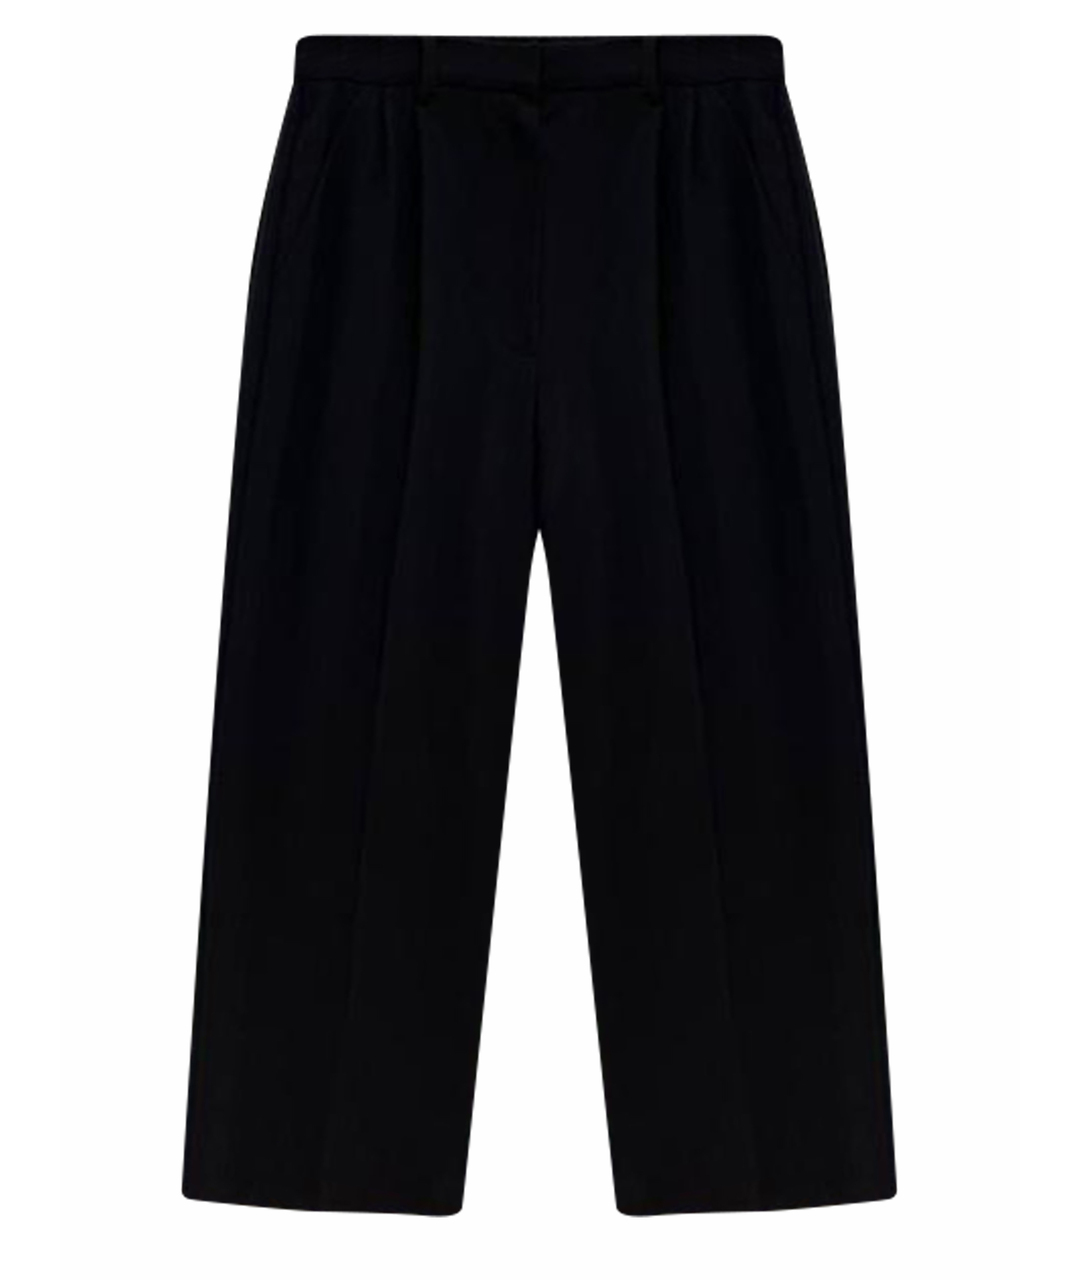 BOHEMIQUE Черные полиэстеровые брюки широкие, фото 1